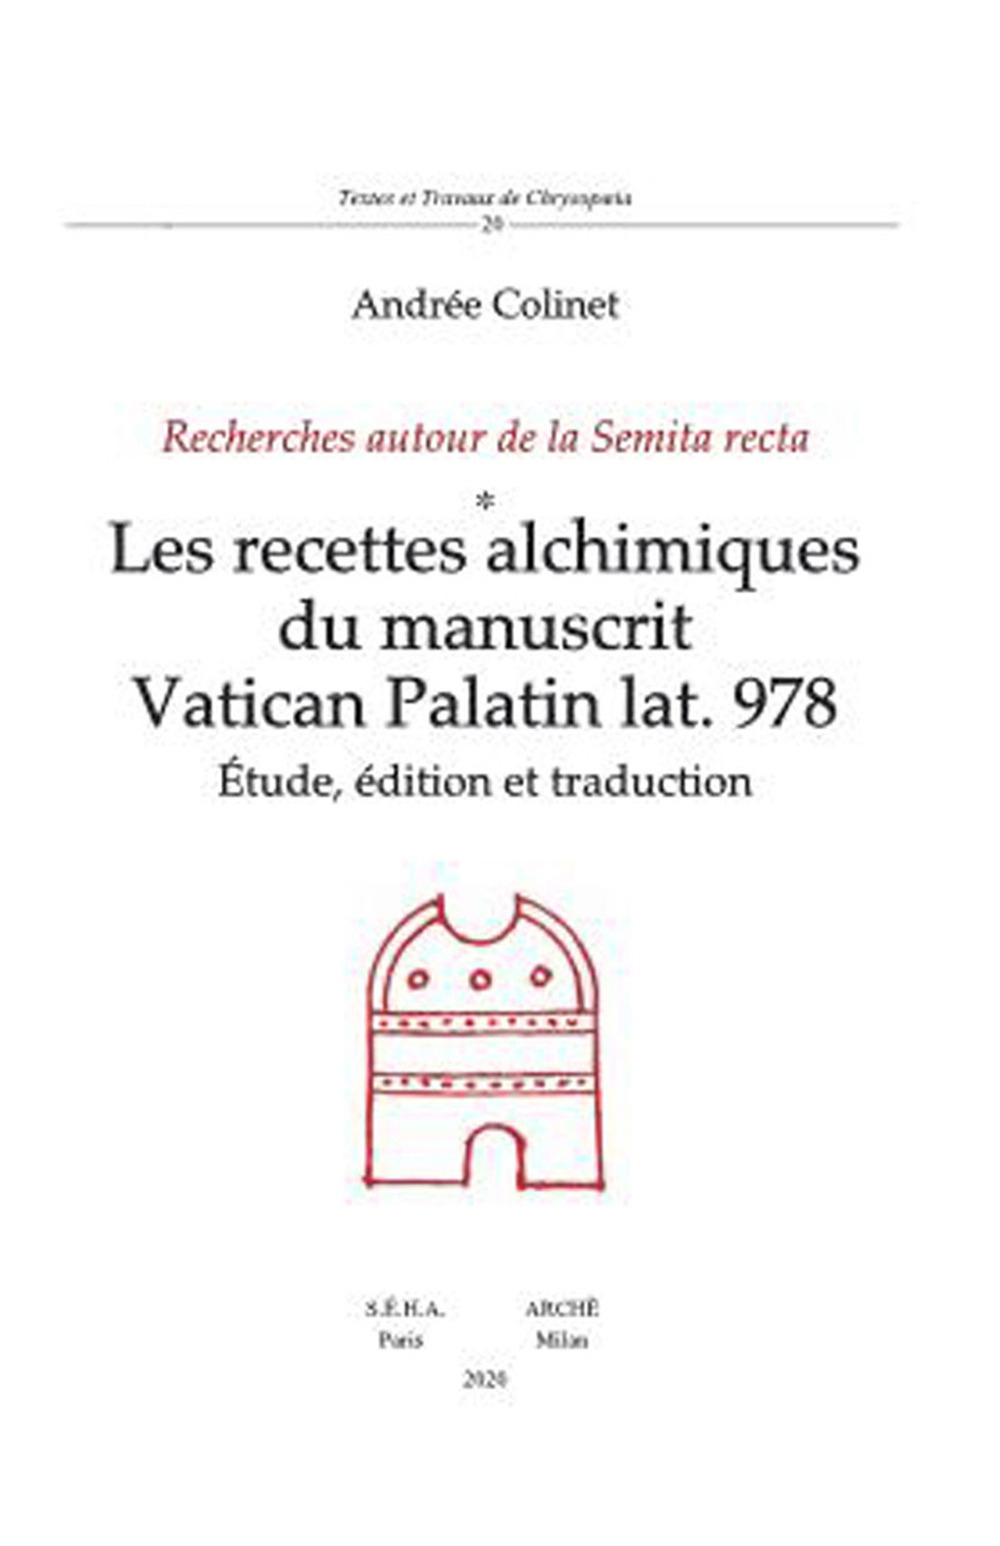 Les recettes alchimiques du manuscrit Vatican Palatin lat. 978. Études, édition et traduction. Recherches autour de la Semita recta